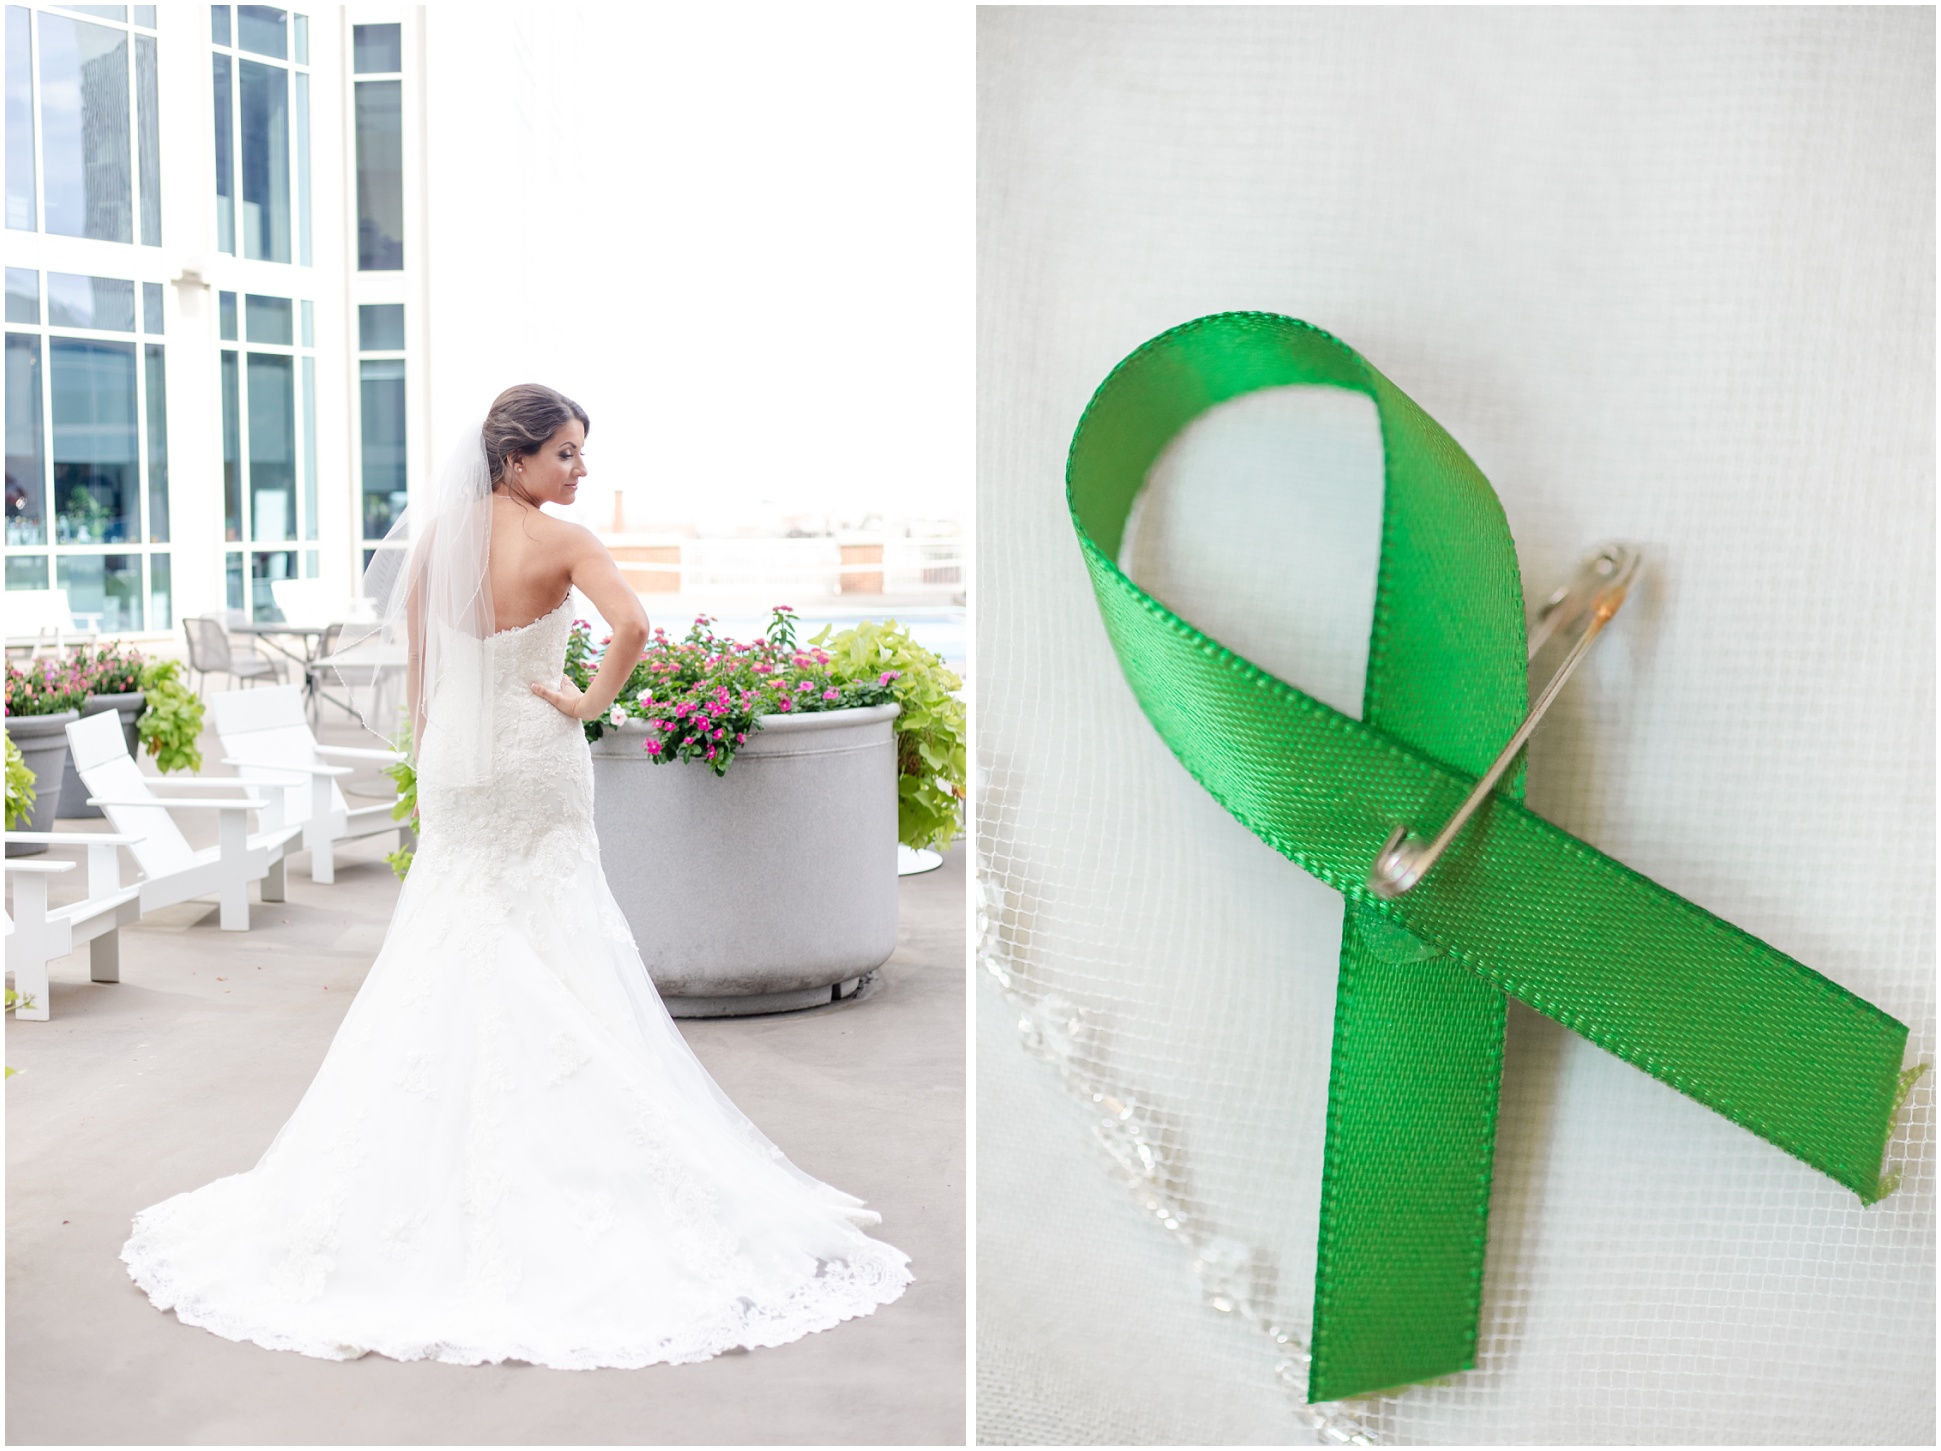 Left: Bridal Portrait, Right: Green ribbon on veil for kidney disease